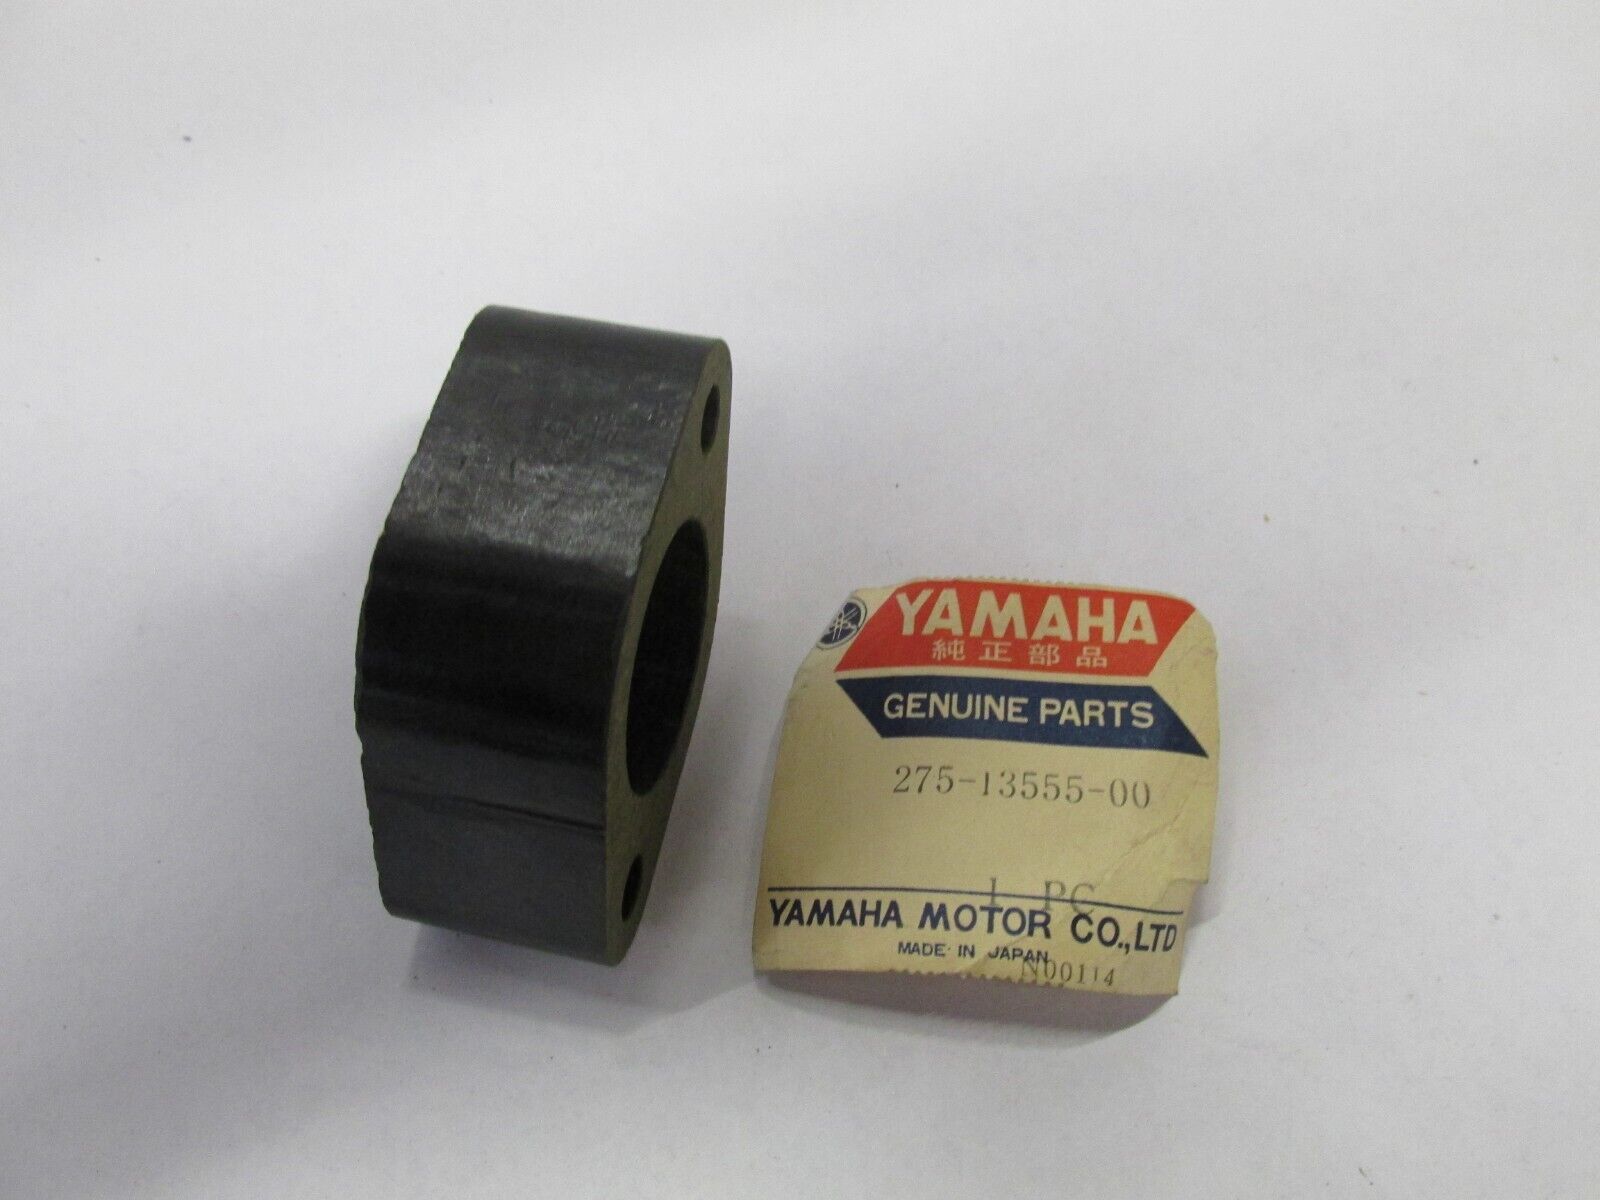 NOS OEM Yamaha Intake Manifold 1970-1971 RT1 360 Off Road 275-13555-00